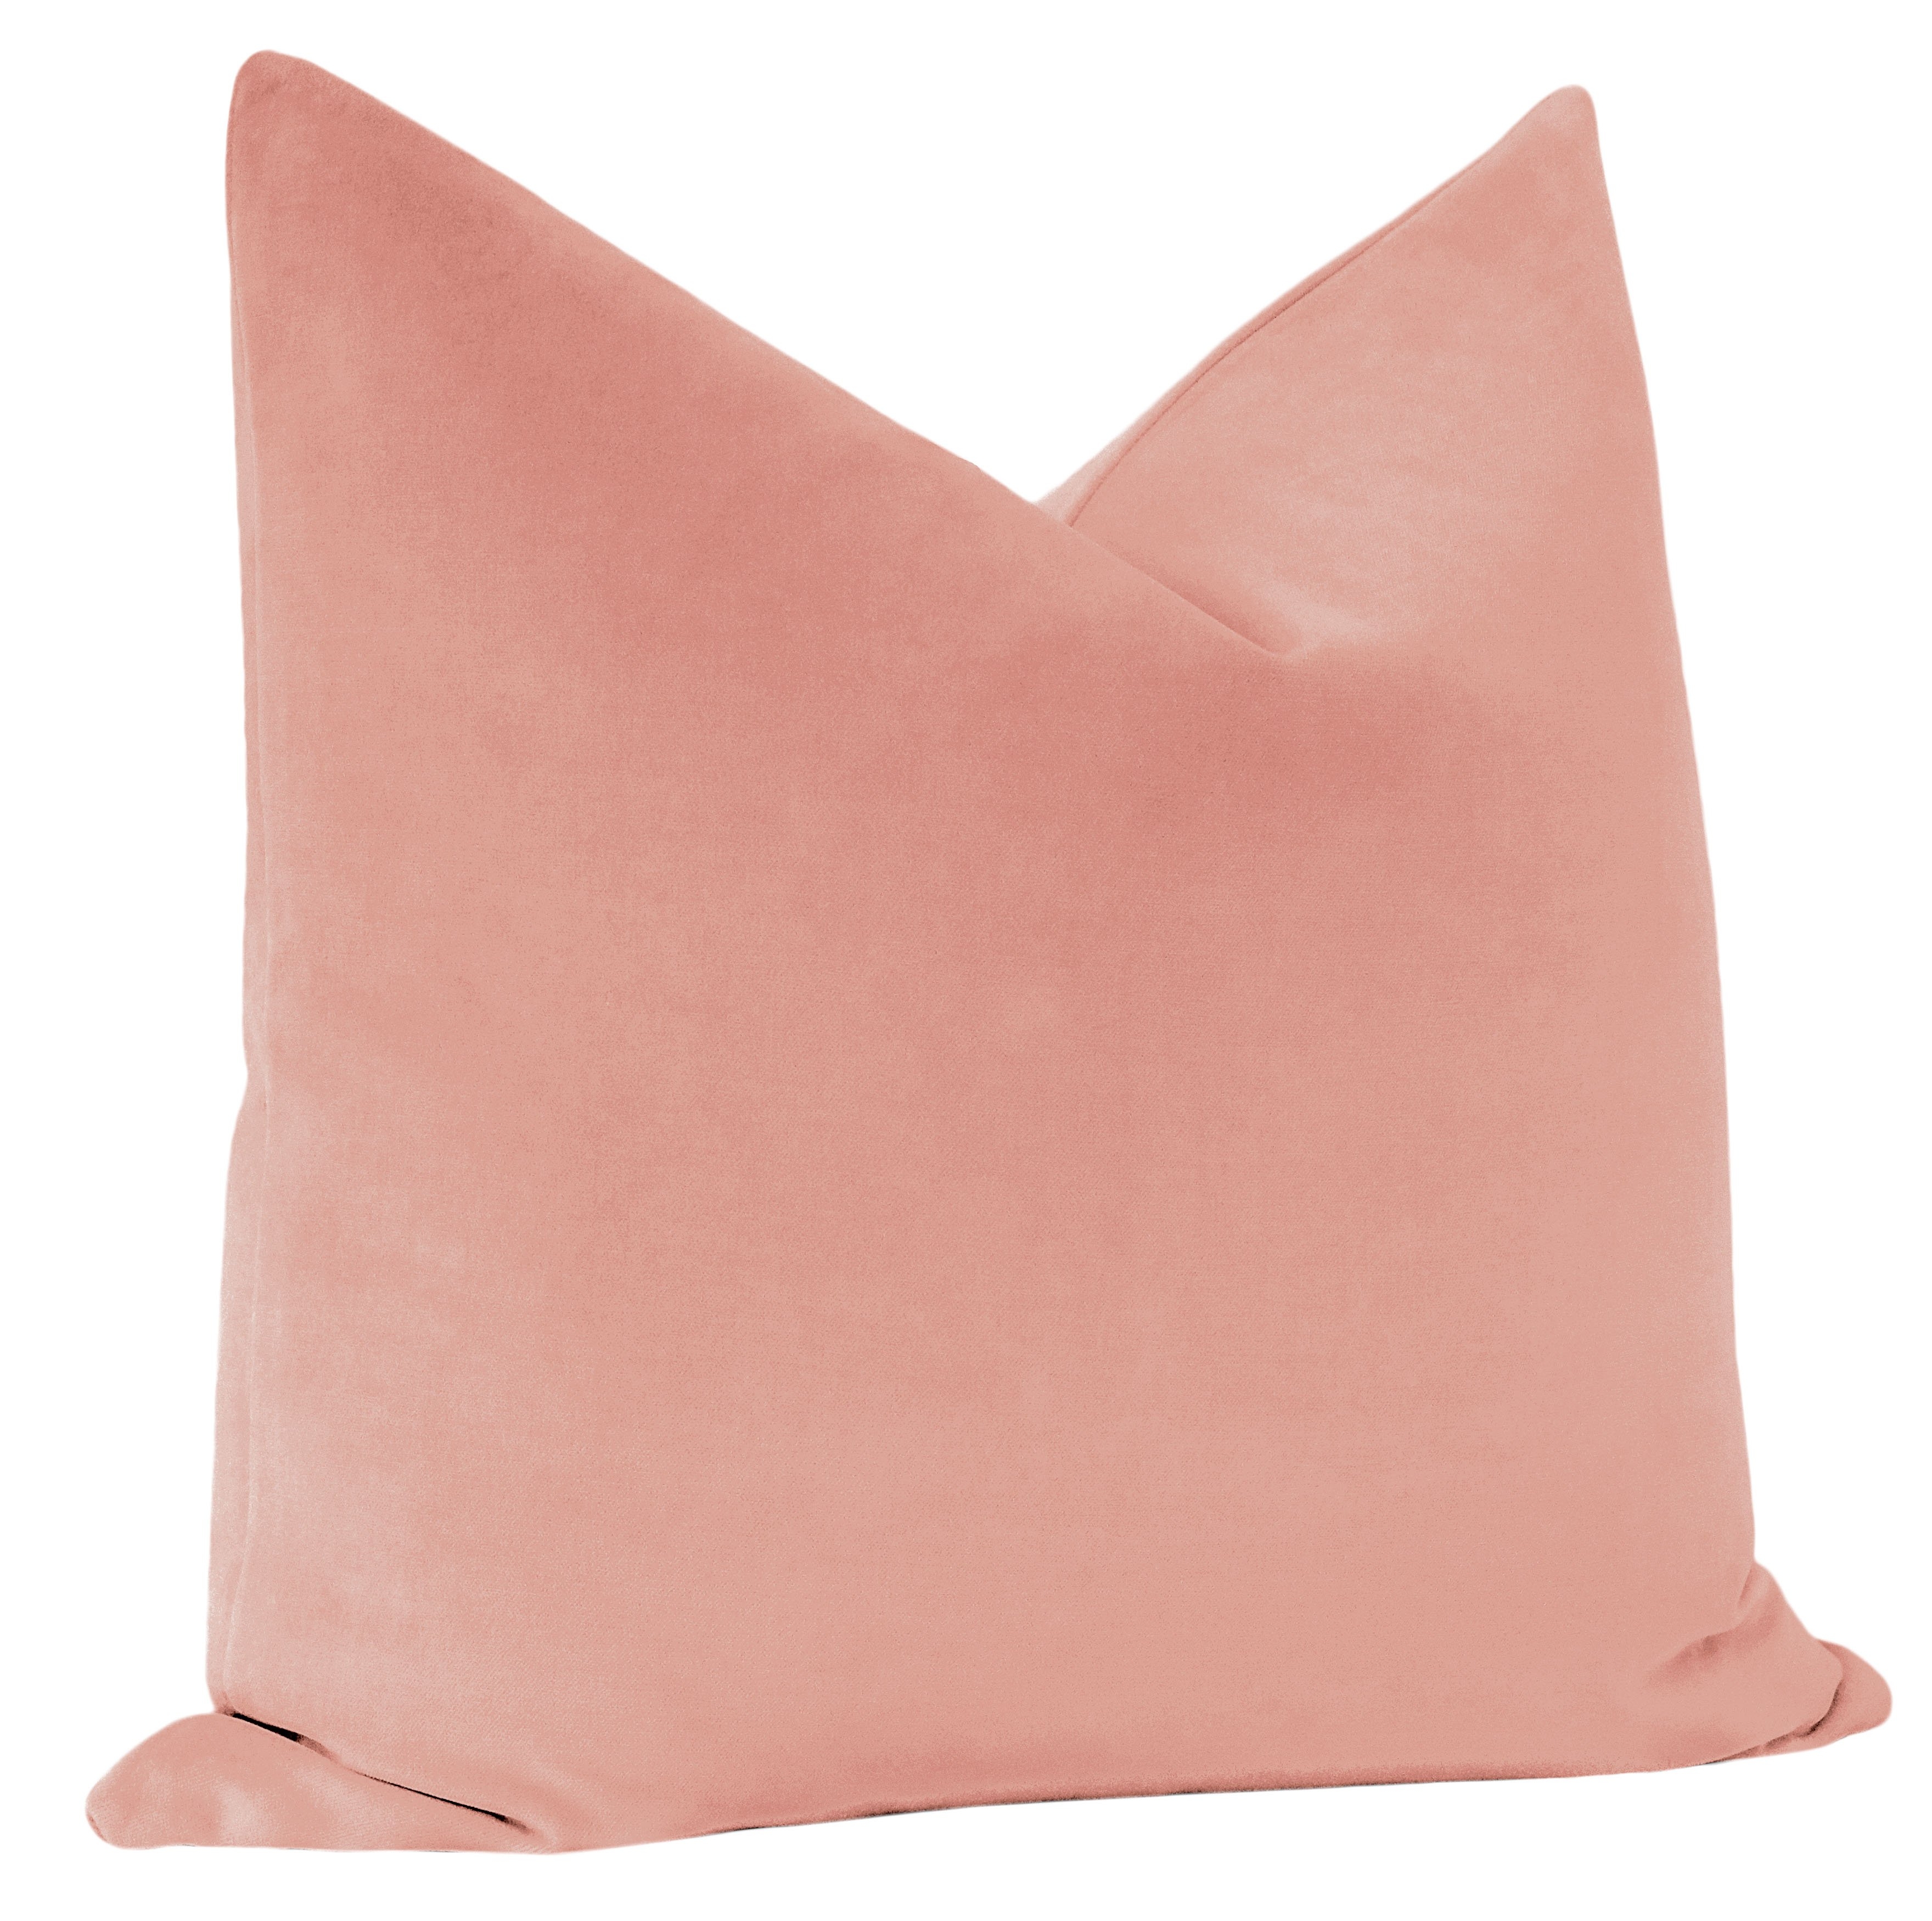 Classic Velvet Pillow Cover, Blush, 18" x 18" - Image 1